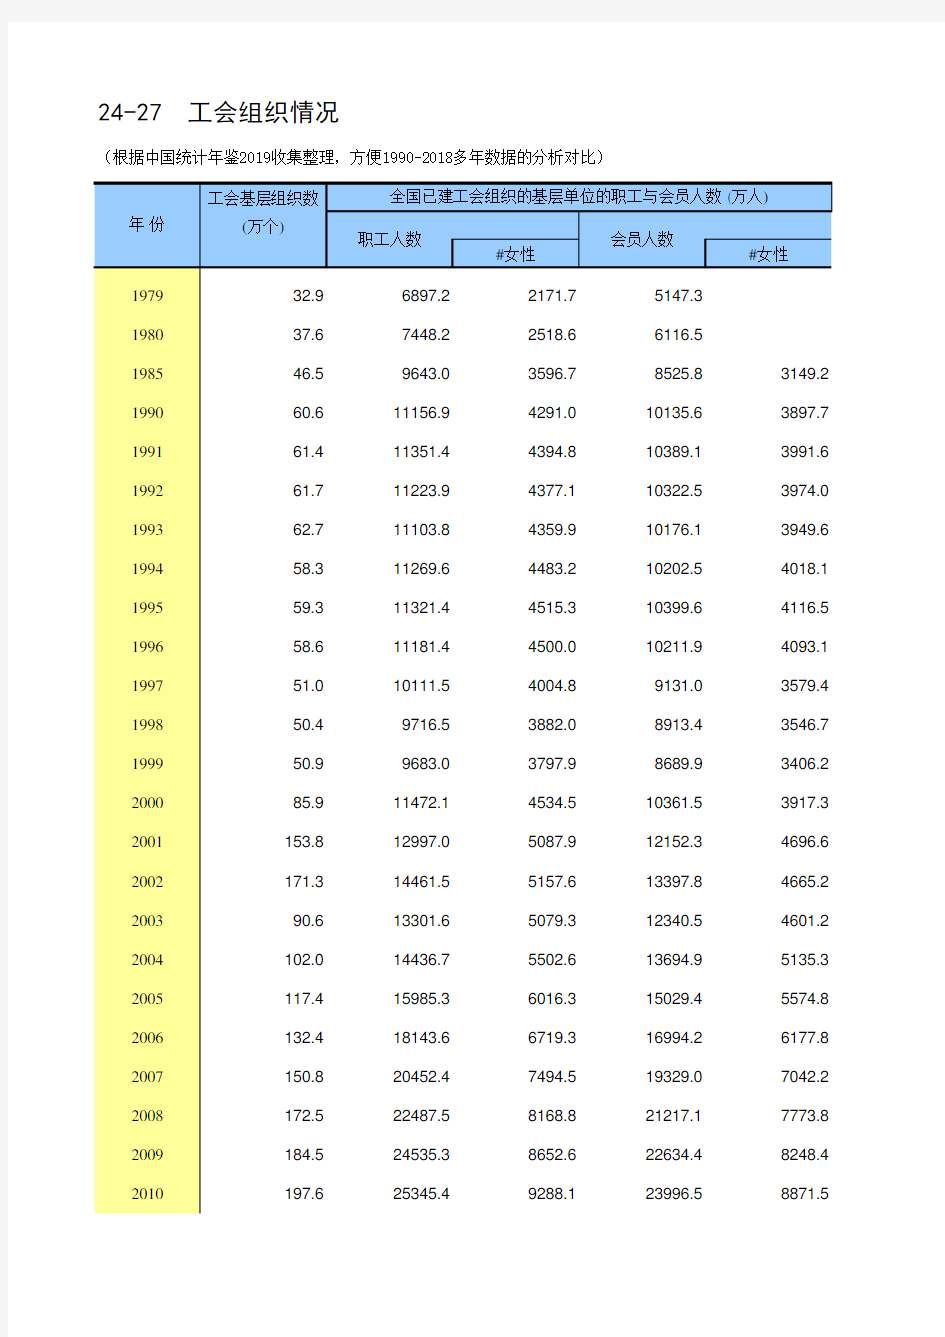 24-27 中国统计年鉴数据处理：工会组织情况(仅全国指标,便于1990-2018多年数据分析对比)